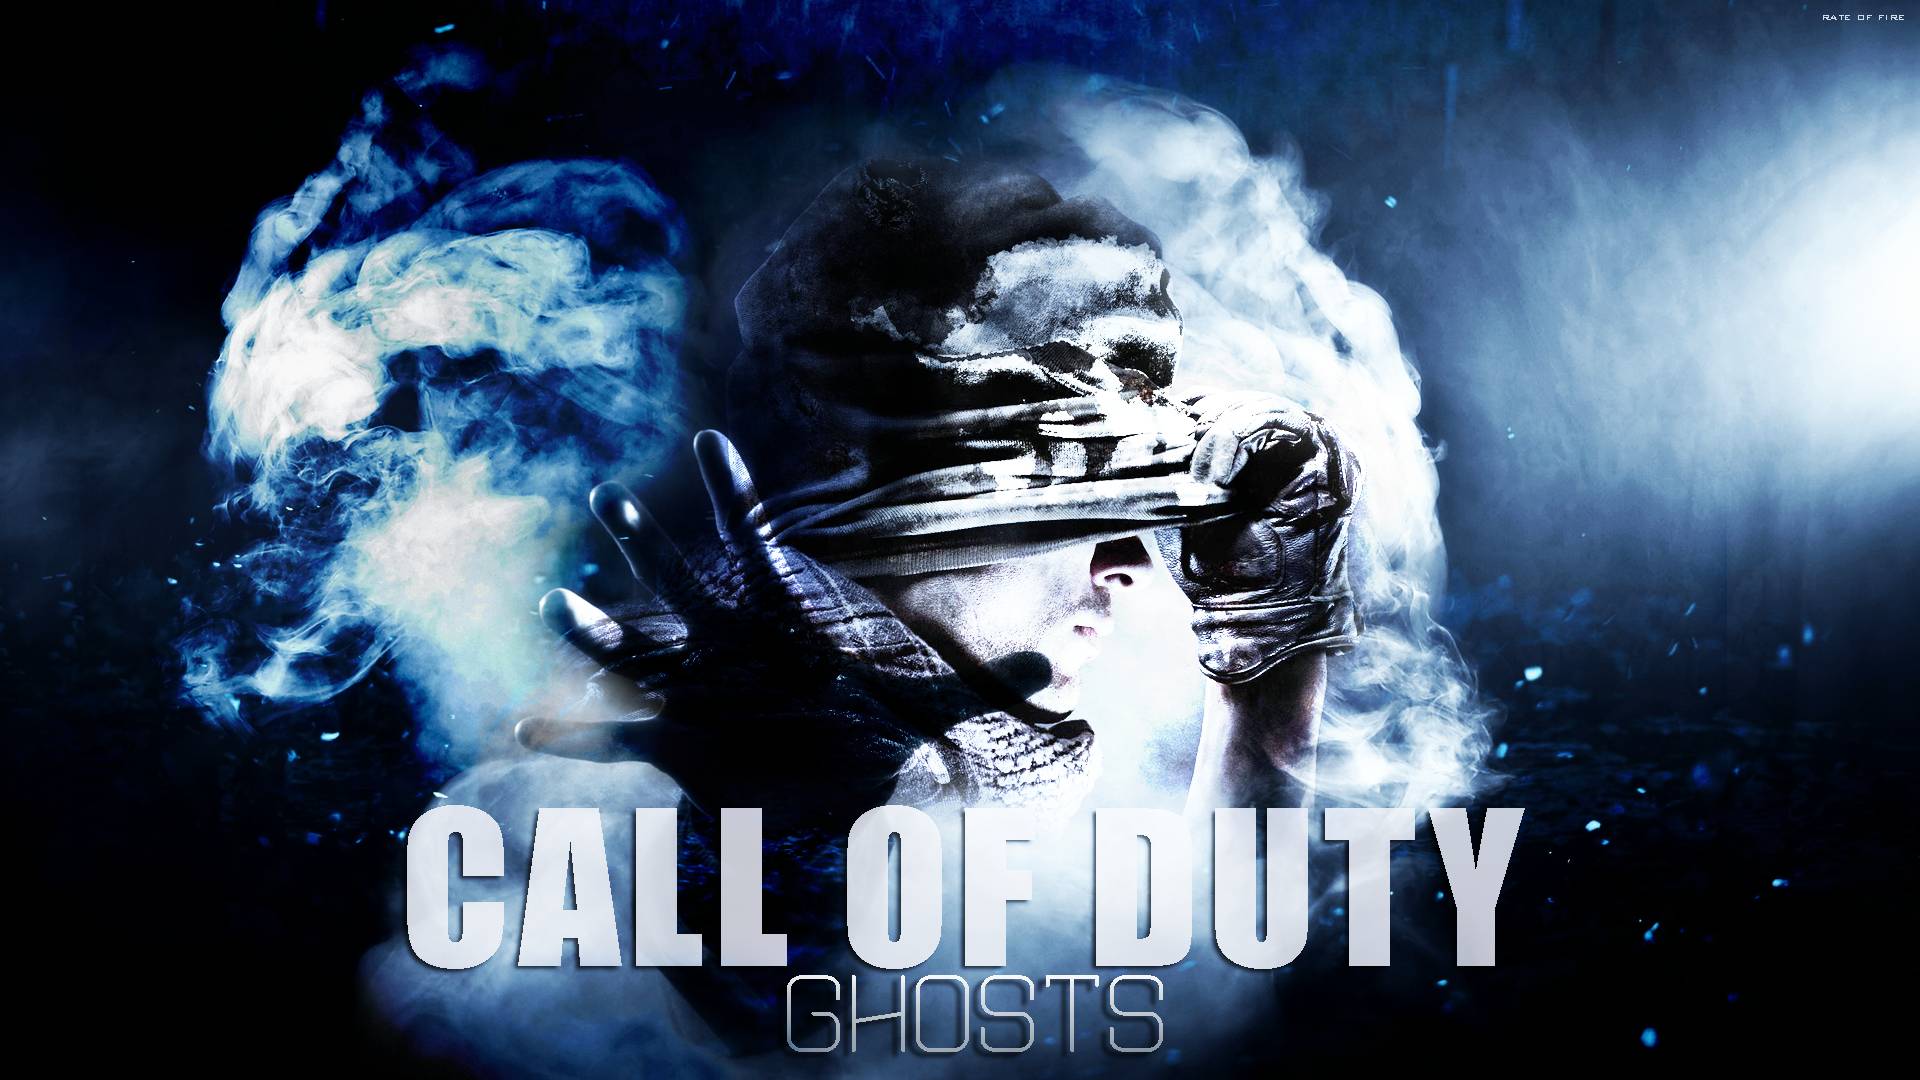 COD Ghost 4 Of Duty Wallpaper